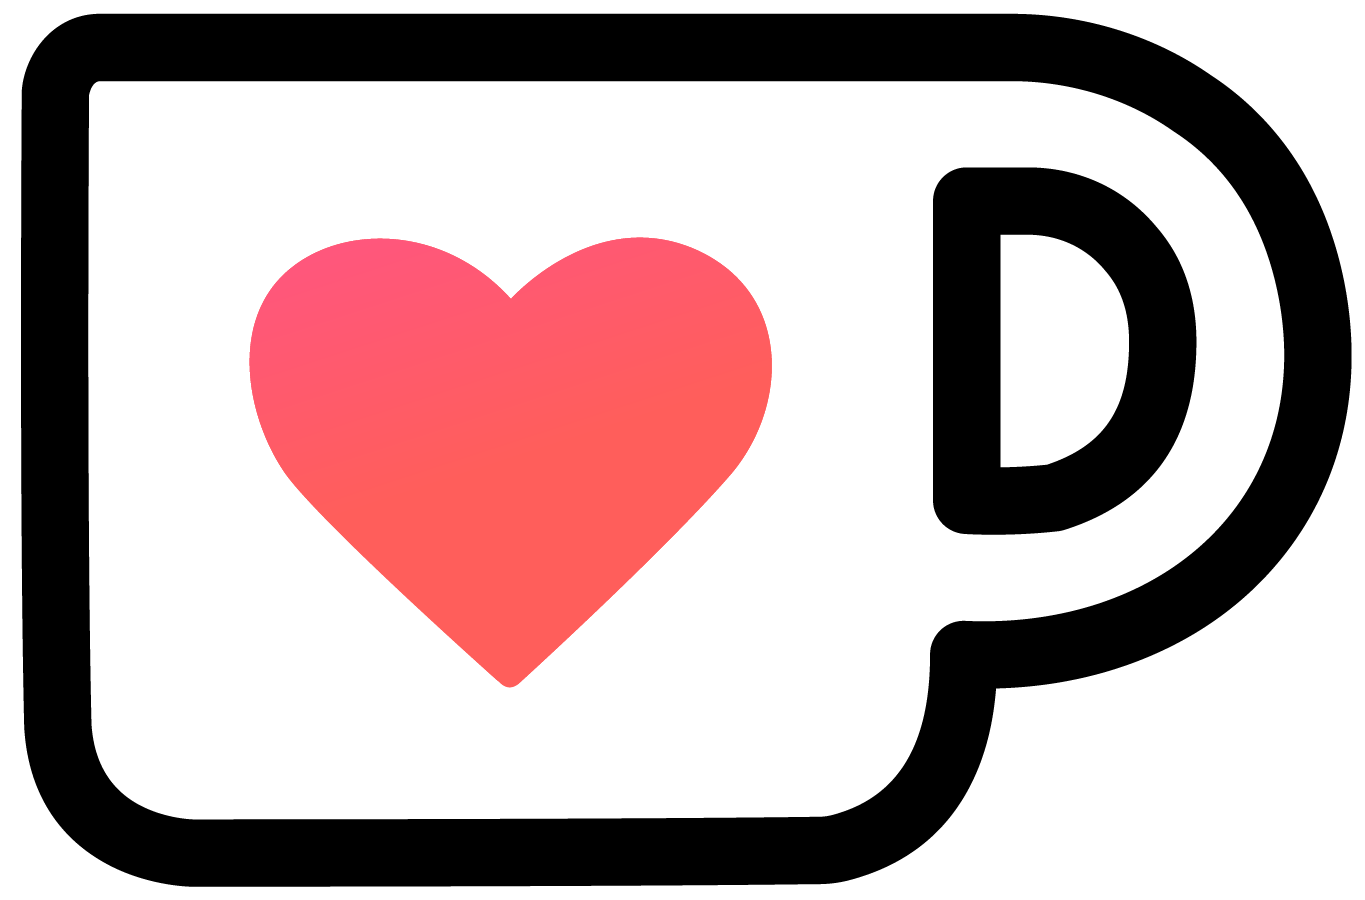 Eine kleine Kaffeetasse mit Herz, die ein Link zu meiner Ko-fi Seite ist.